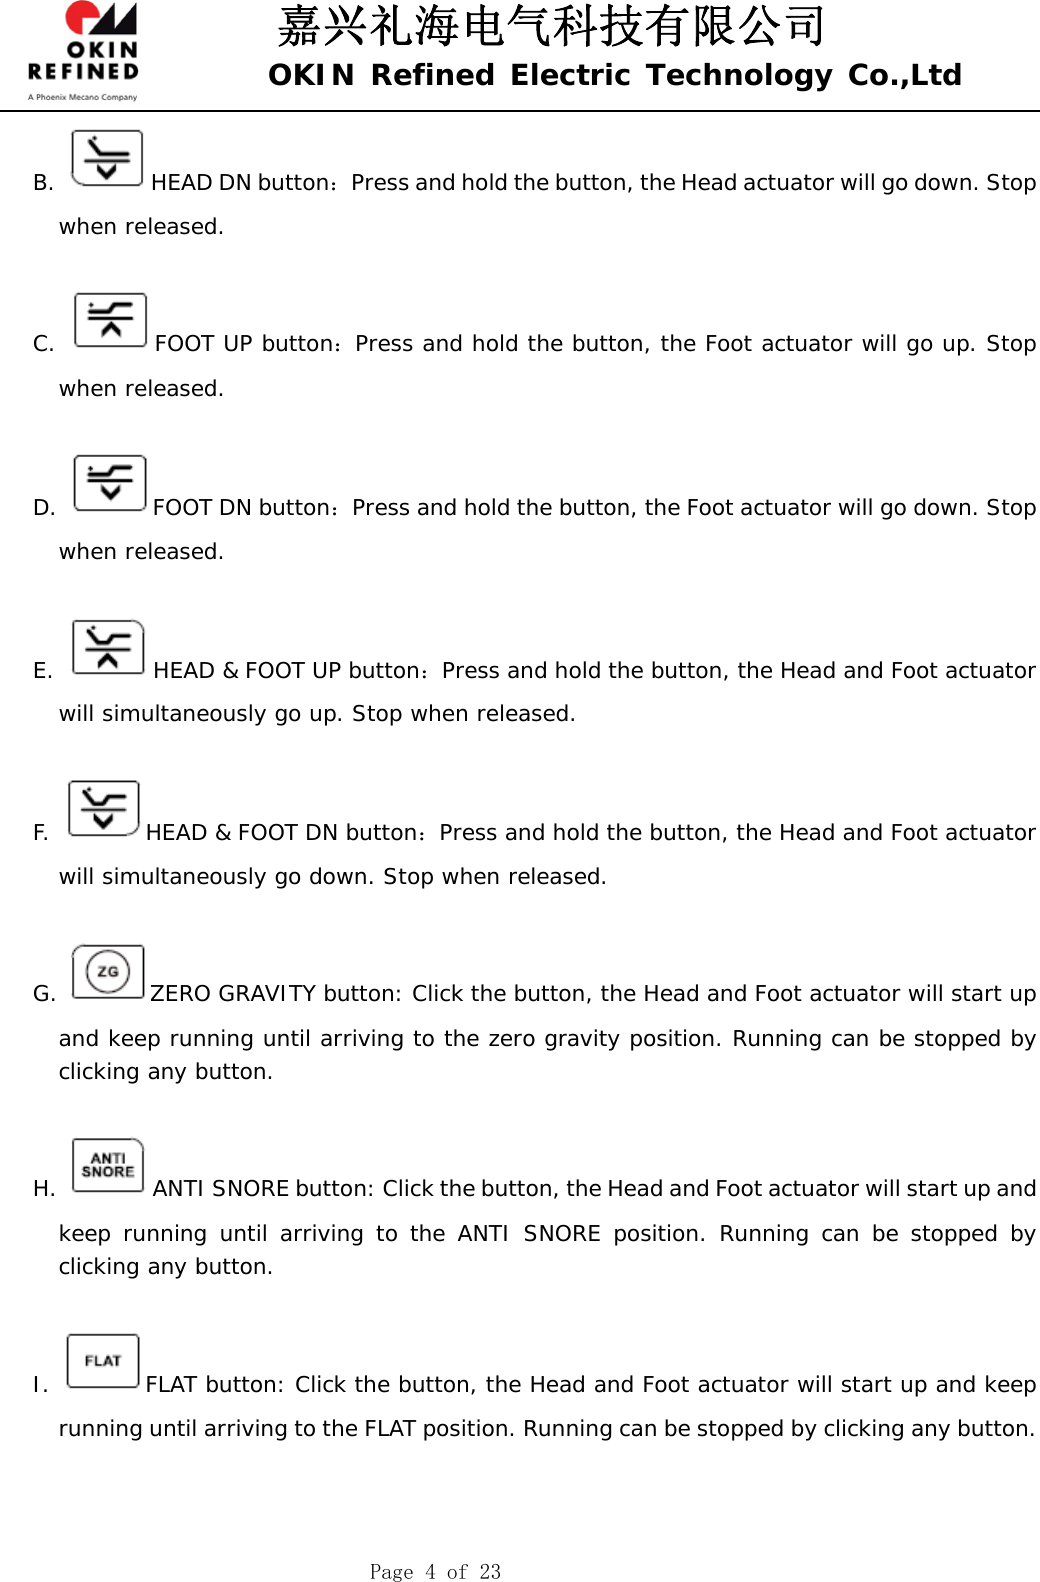 嘉兴礼海电气科技有限公司 OKIN Refined Electric Technology Co.,Ltd    Page 4 of 23 B.  HEAD DN button：Press and hold the button, the Head actuator will go down. Stop when released.  C.  FOOT UP button：Press and hold the button, the Foot actuator will go up. Stop when released.  D.  FOOT DN button：Press and hold the button, the Foot actuator will go down. Stop when released.  E.  HEAD &amp; FOOT UP button：Press and hold the button, the Head and Foot actuator will simultaneously go up. Stop when released.  F.  HEAD &amp; FOOT DN button：Press and hold the button, the Head and Foot actuator will simultaneously go down. Stop when released.  G.  ZERO GRAVITY button: Click the button, the Head and Foot actuator will start up and keep running until arriving to the zero gravity position. Running can be stopped by clicking any button.   H.  ANTI SNORE button: Click the button, the Head and Foot actuator will start up and keep running until arriving to the ANTI SNORE position. Running can be stopped by clicking any button.   I.  FLAT button: Click the button, the Head and Foot actuator will start up and keep running until arriving to the FLAT position. Running can be stopped by clicking any button.    